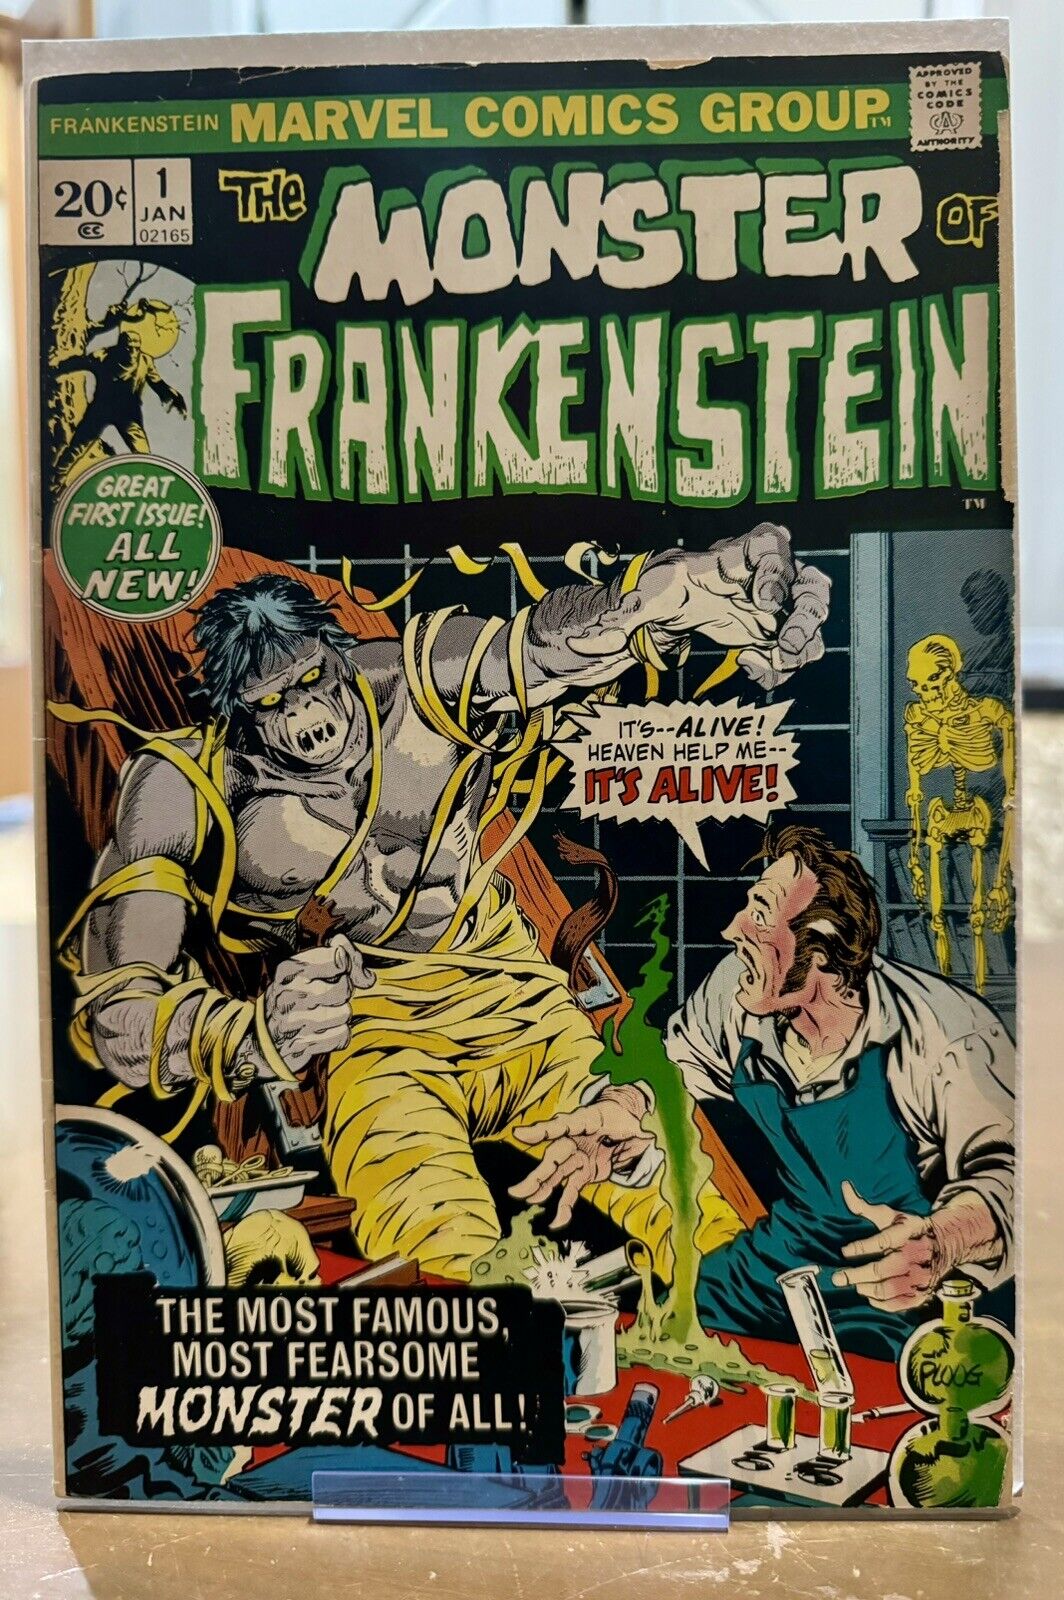 The Monster of Frankenstein #1 (Marvel Comics)